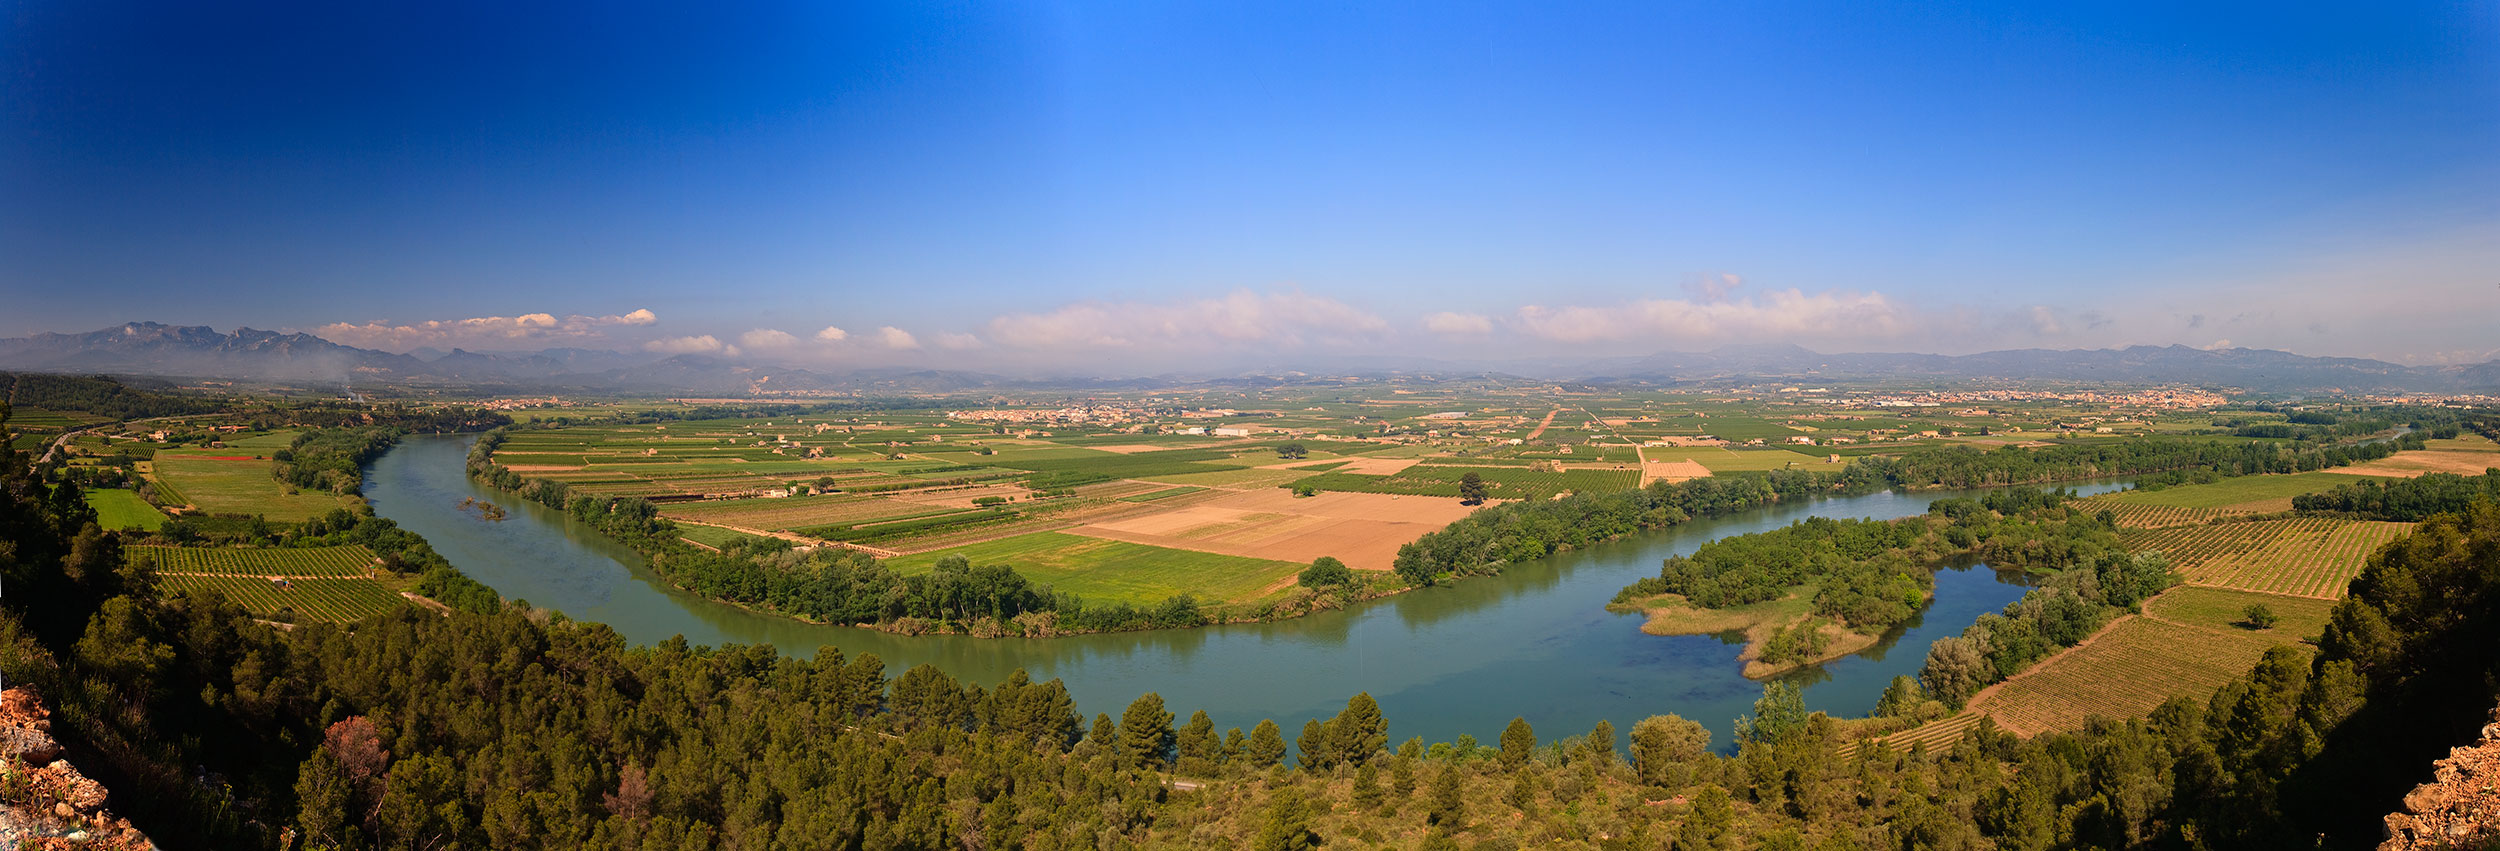 Les Illes de la rivière de l'Ebre - ©Patronat de Turisme de la Diputació de Tarragona-Terres de l’Ebre